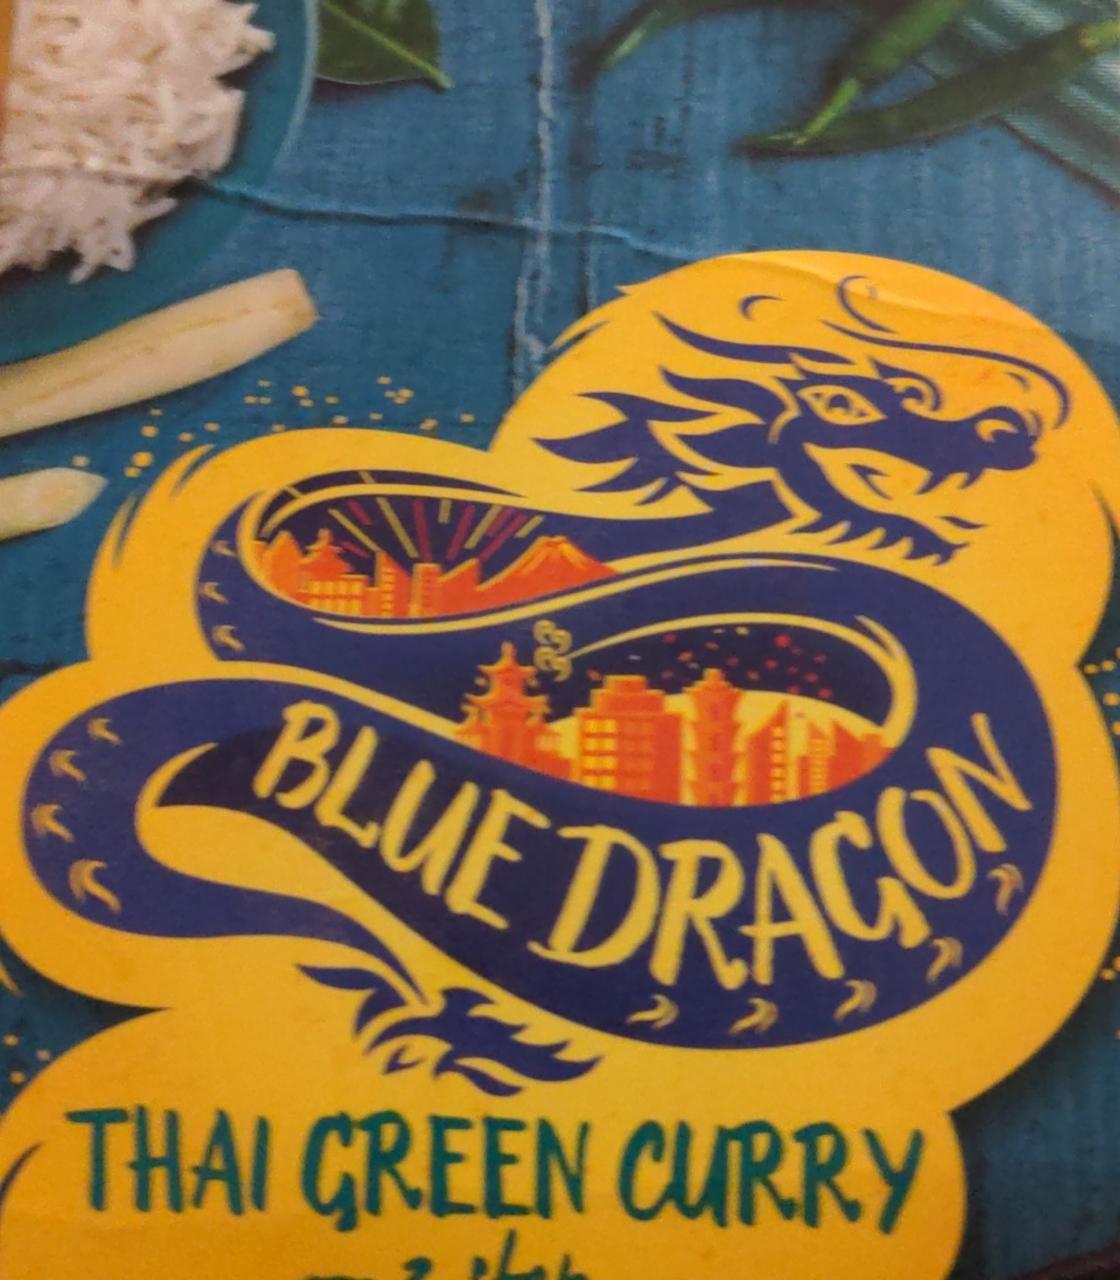 Fotografie - thai green curry Blue Dragon